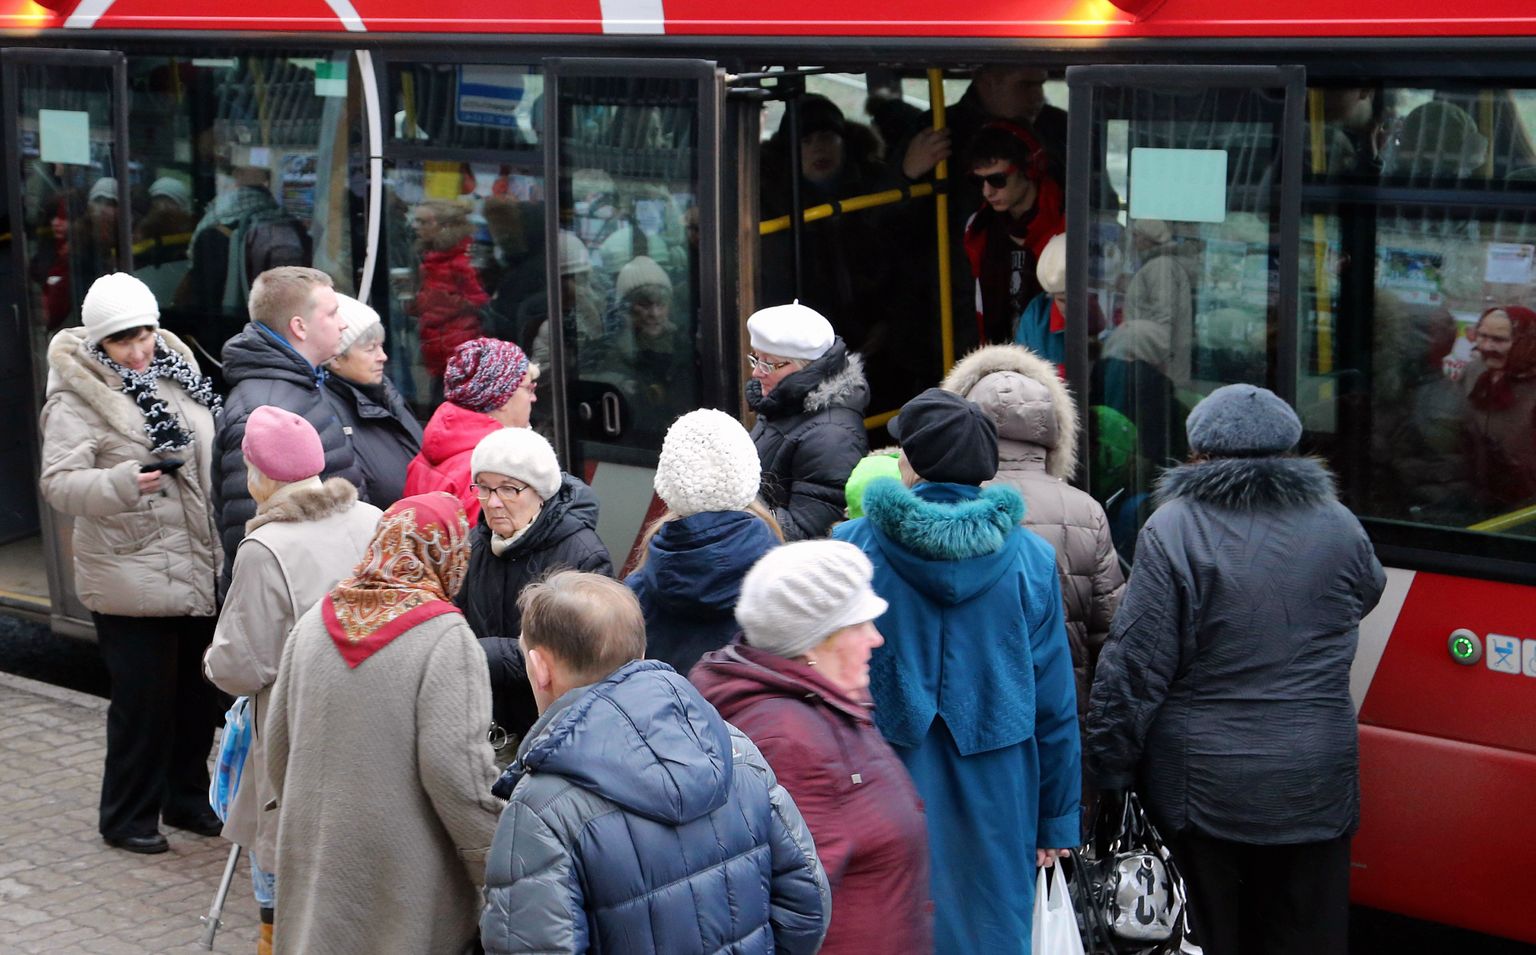 Tartu bussid on tipptunnil ülerahvastatud, mistõttu oleks vaja suuremaid busse ja rohkem busse. Liinivõrgu põhjalikust reformist linnavalitsuse esialgu ei kõnele.